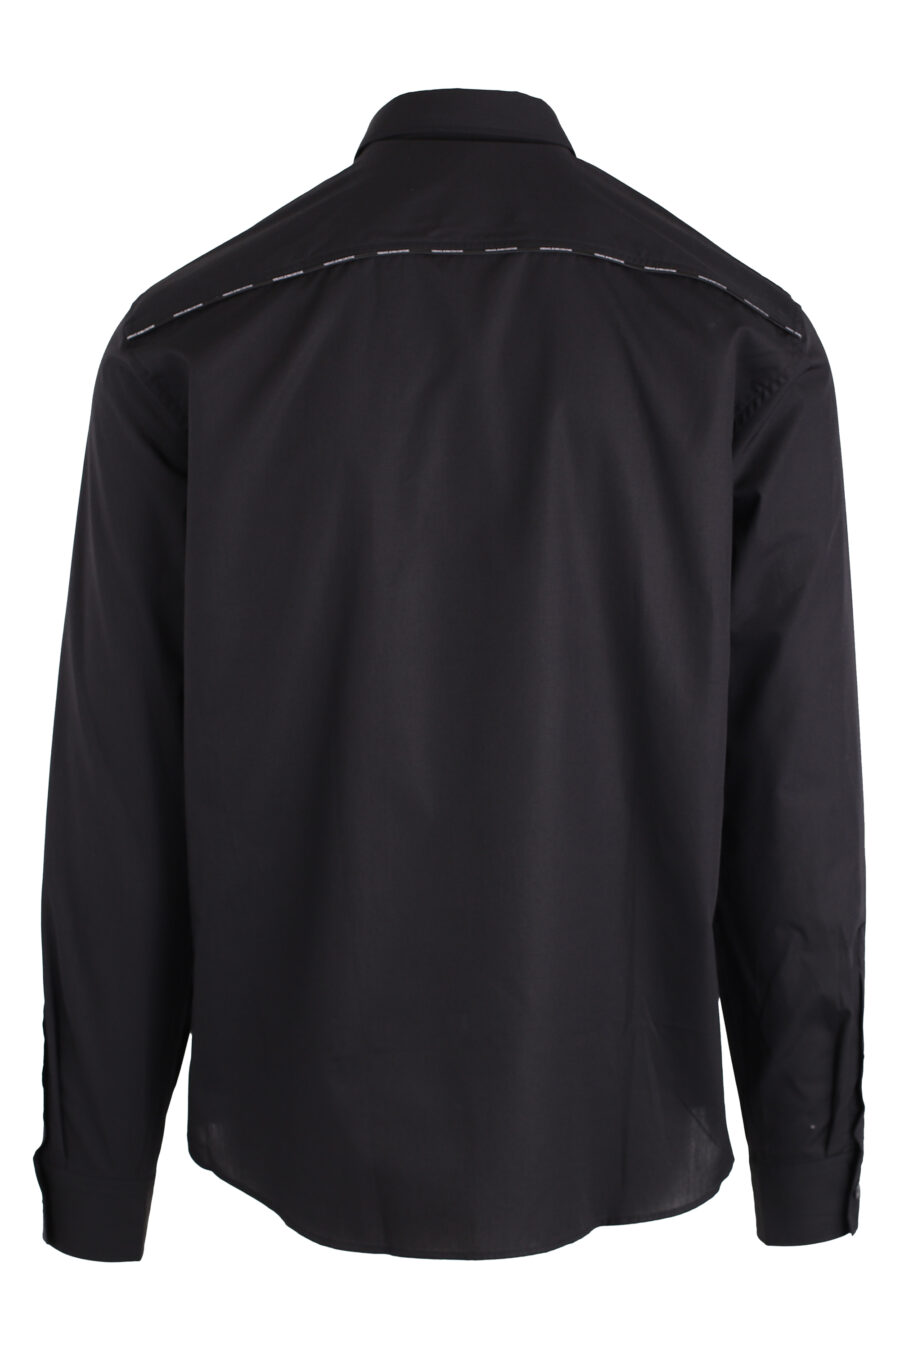 Black button-down shirt - IMG 4131